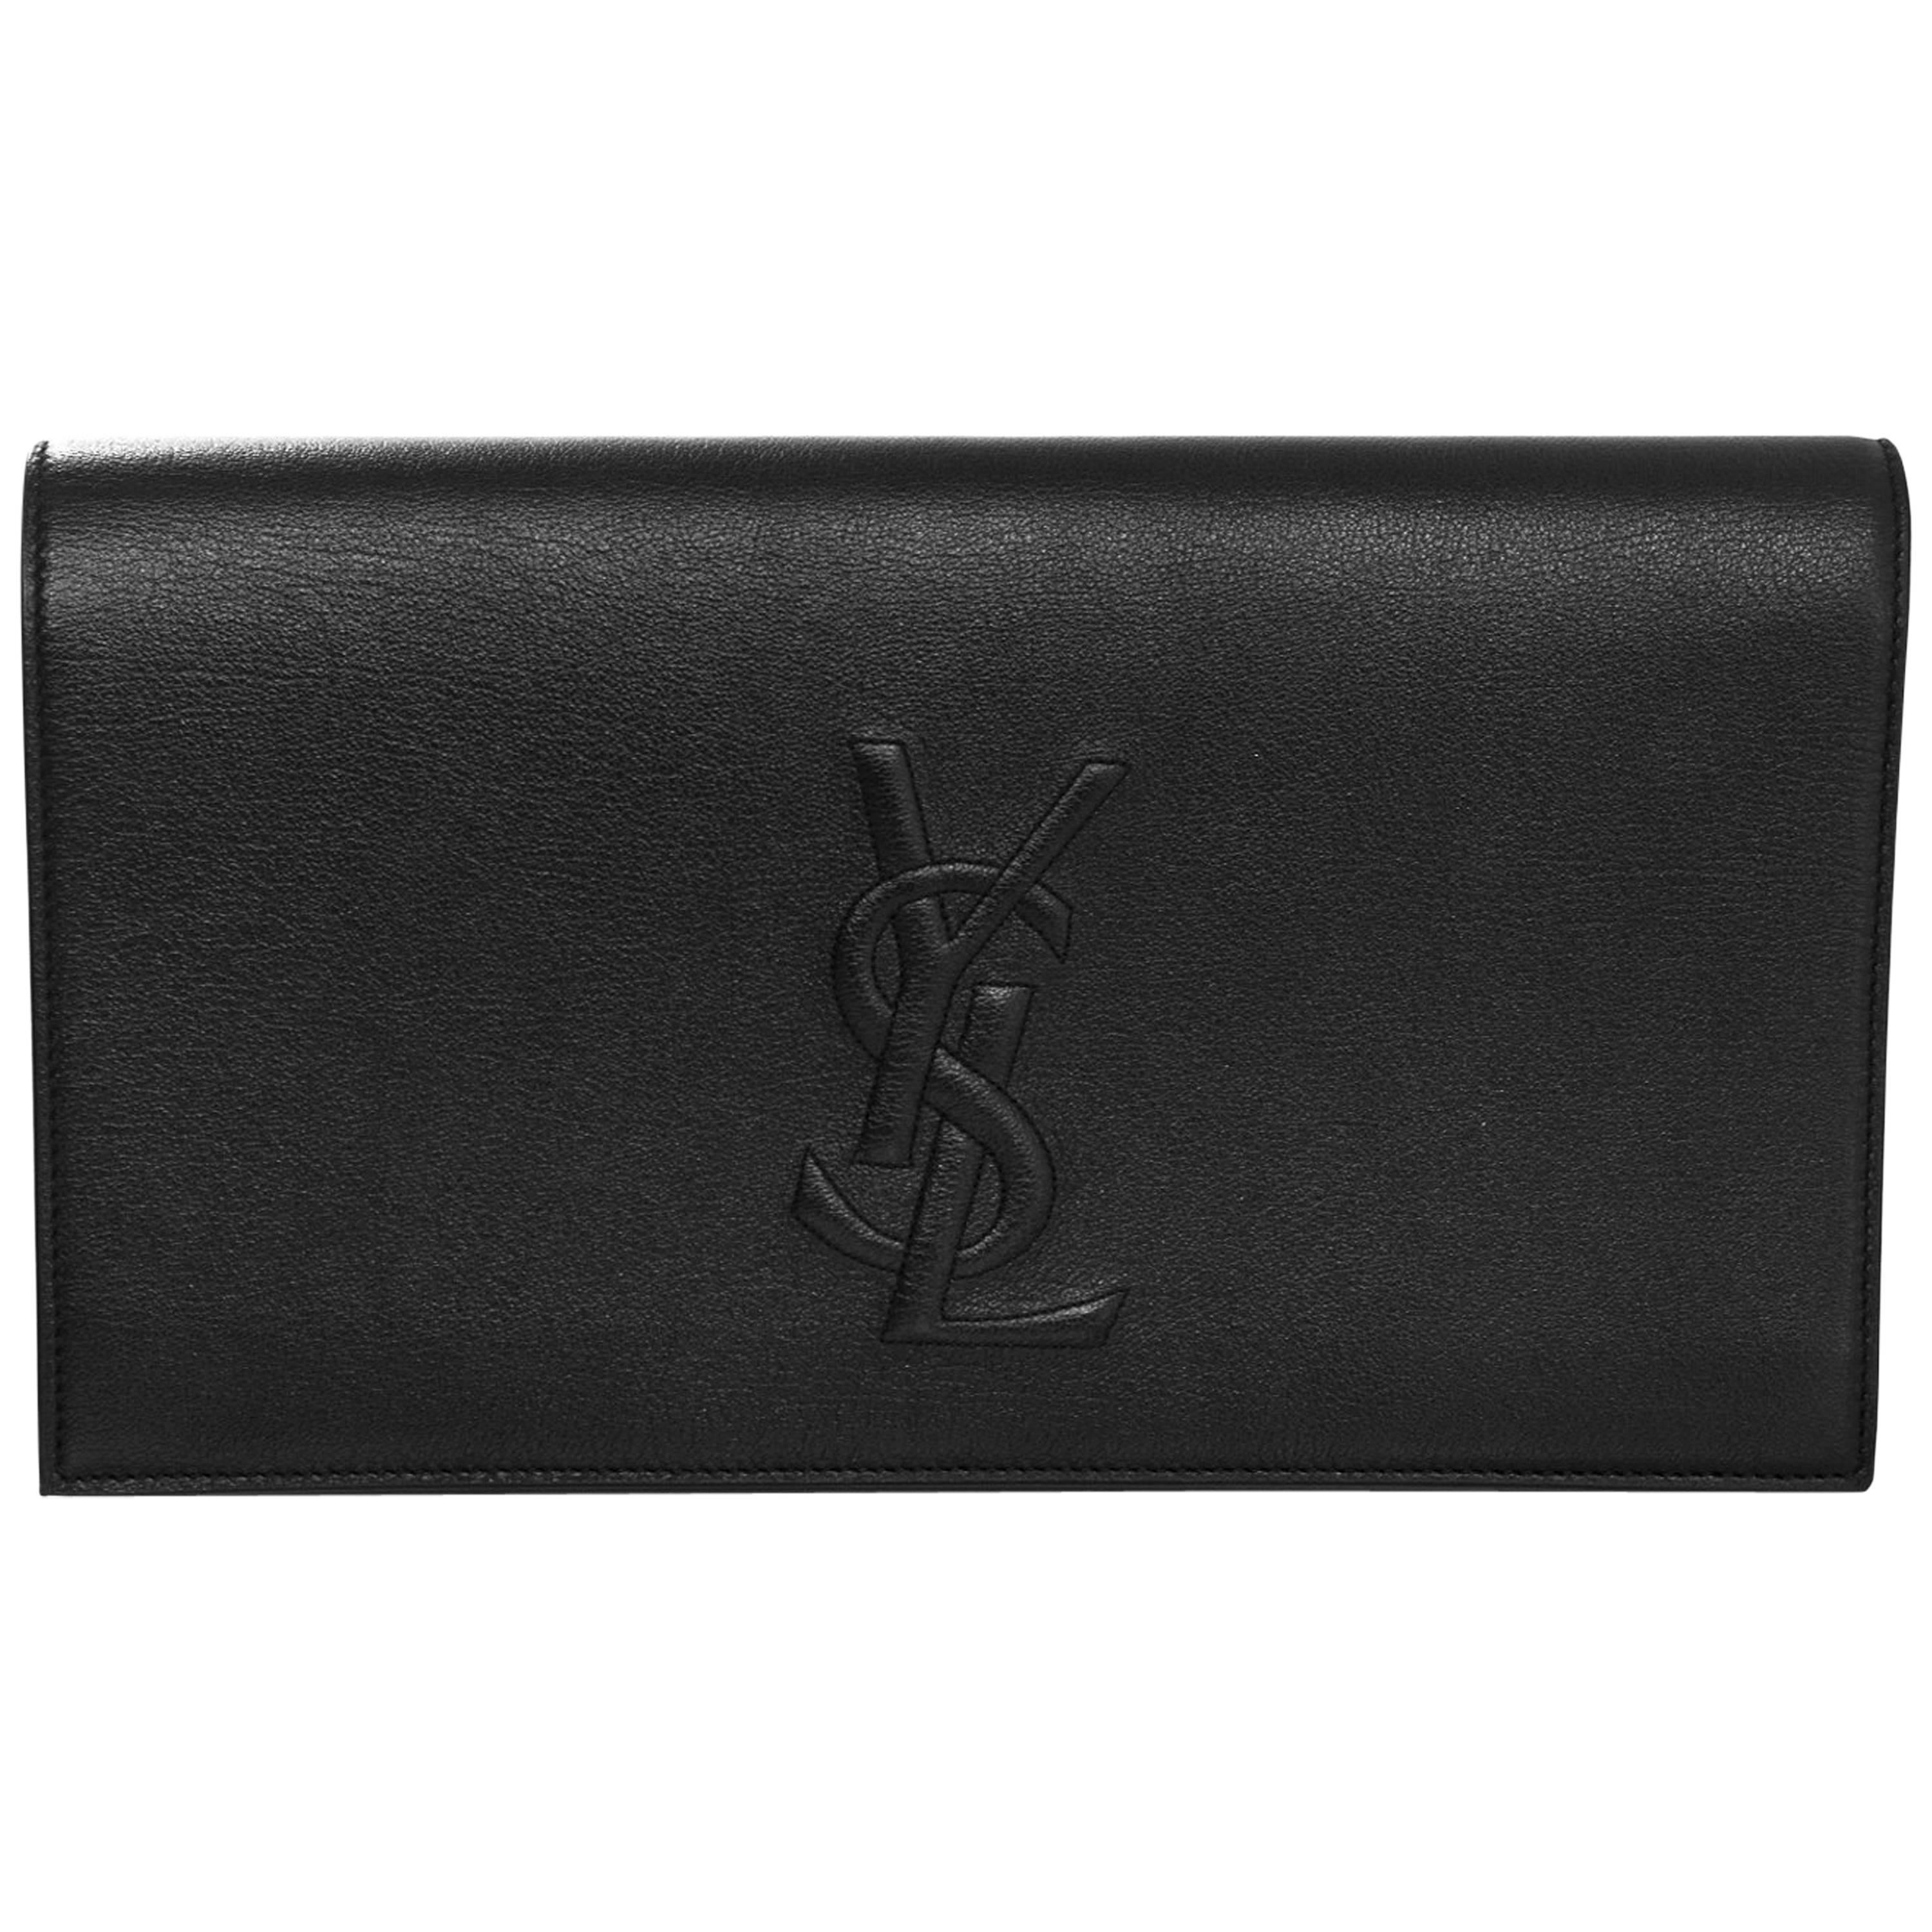 Yves Saint Laurent Black Leather Large Belle De Jour Clutch Bag with DB